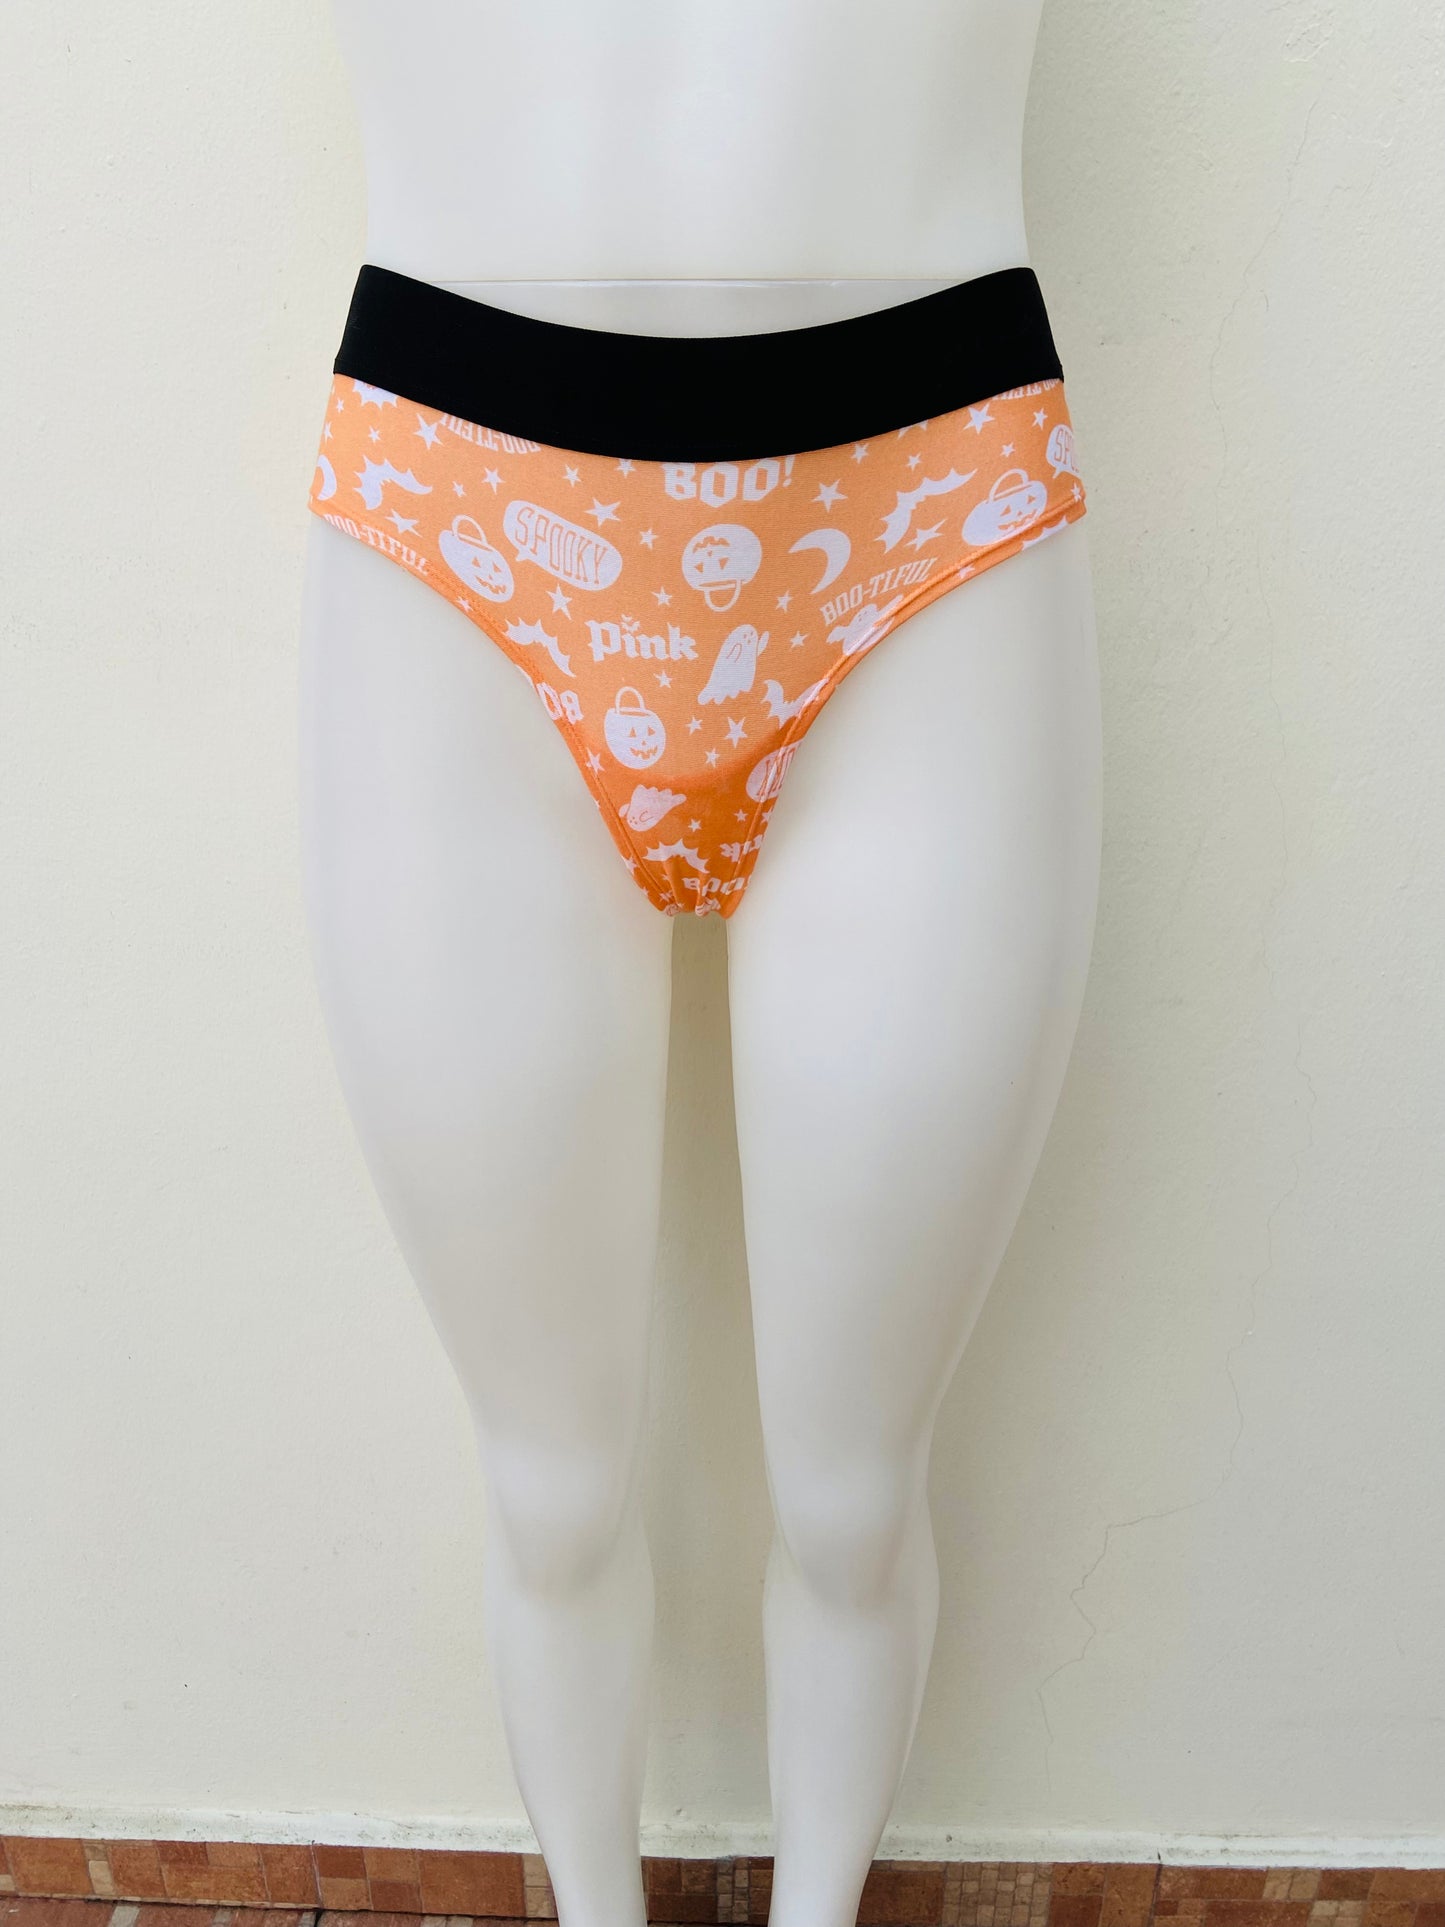 Panti Victoria’s Secret PINK Original naranja con estampado de calabazas y diseños de hallowen y pretina en color negro.